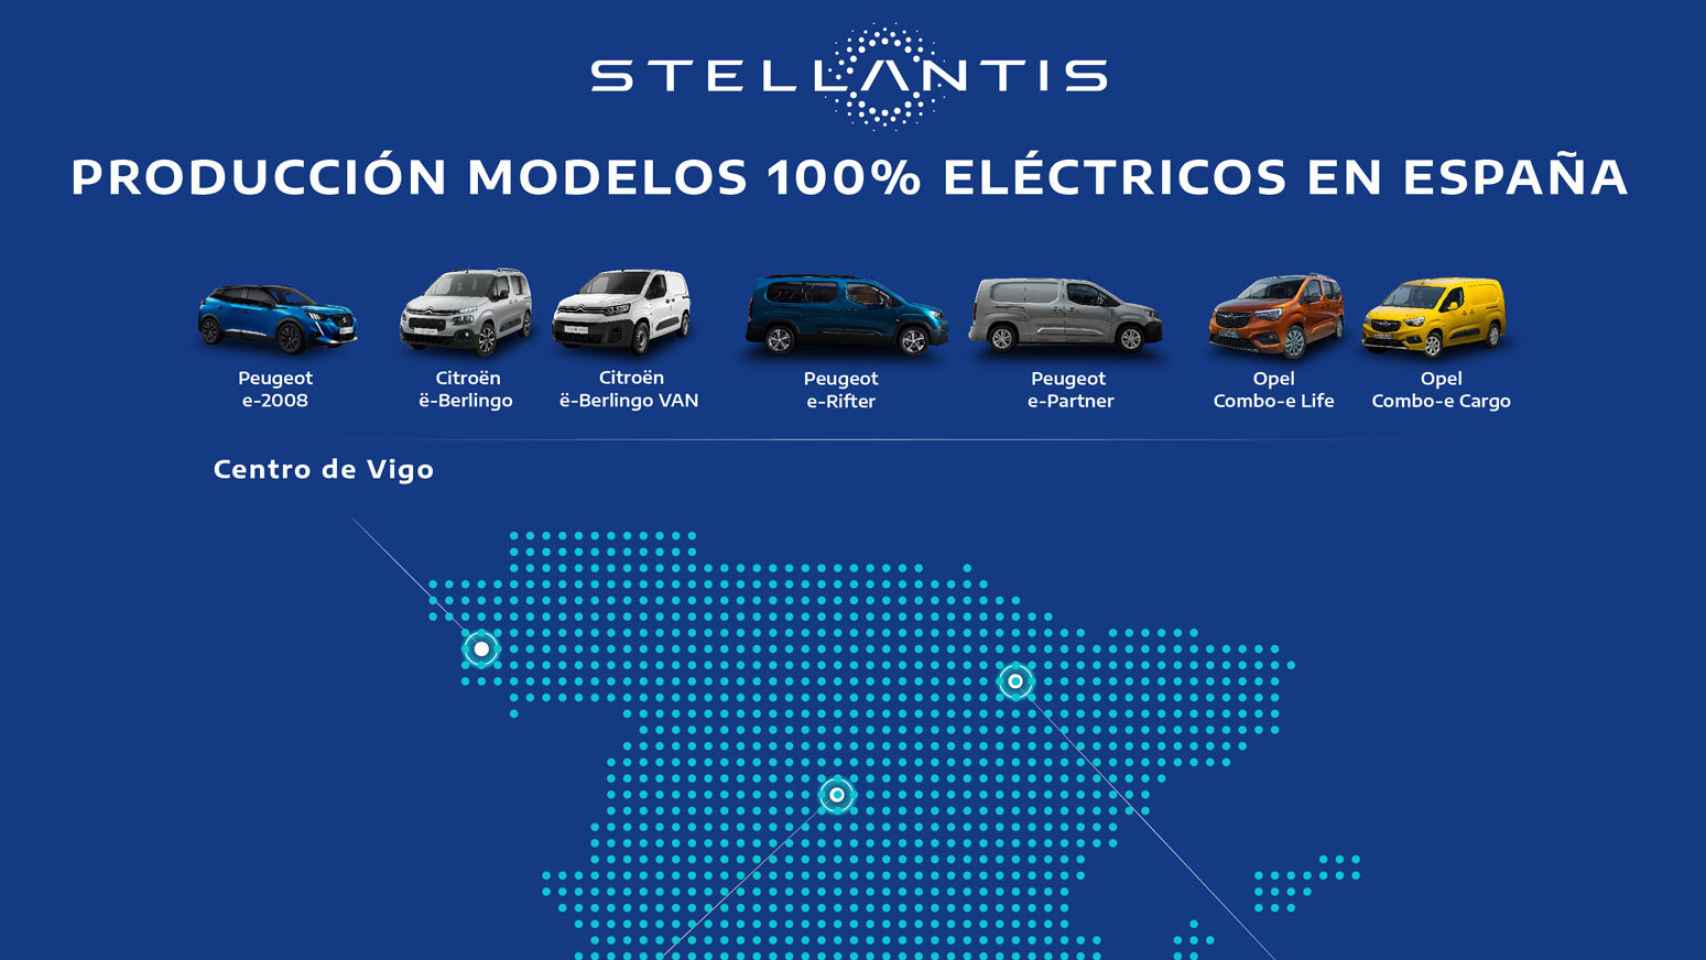 Coches eléctricos que fabrica Stellantis en España.